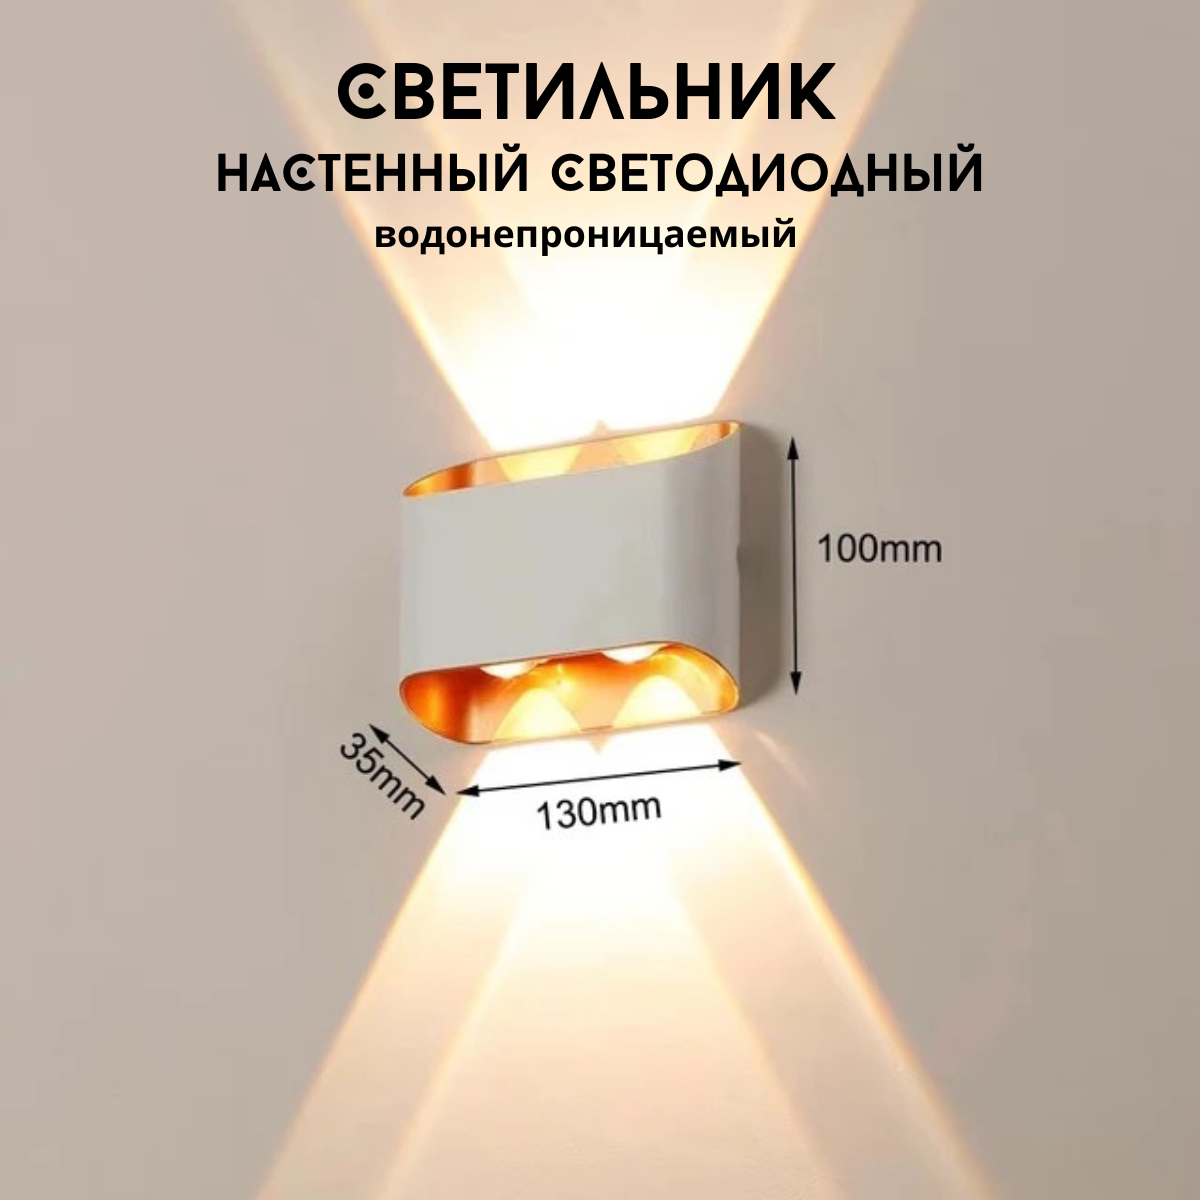 Светильник настенный светодиодный водонепроницаемый бра NORDIC STYLE белый с золотом